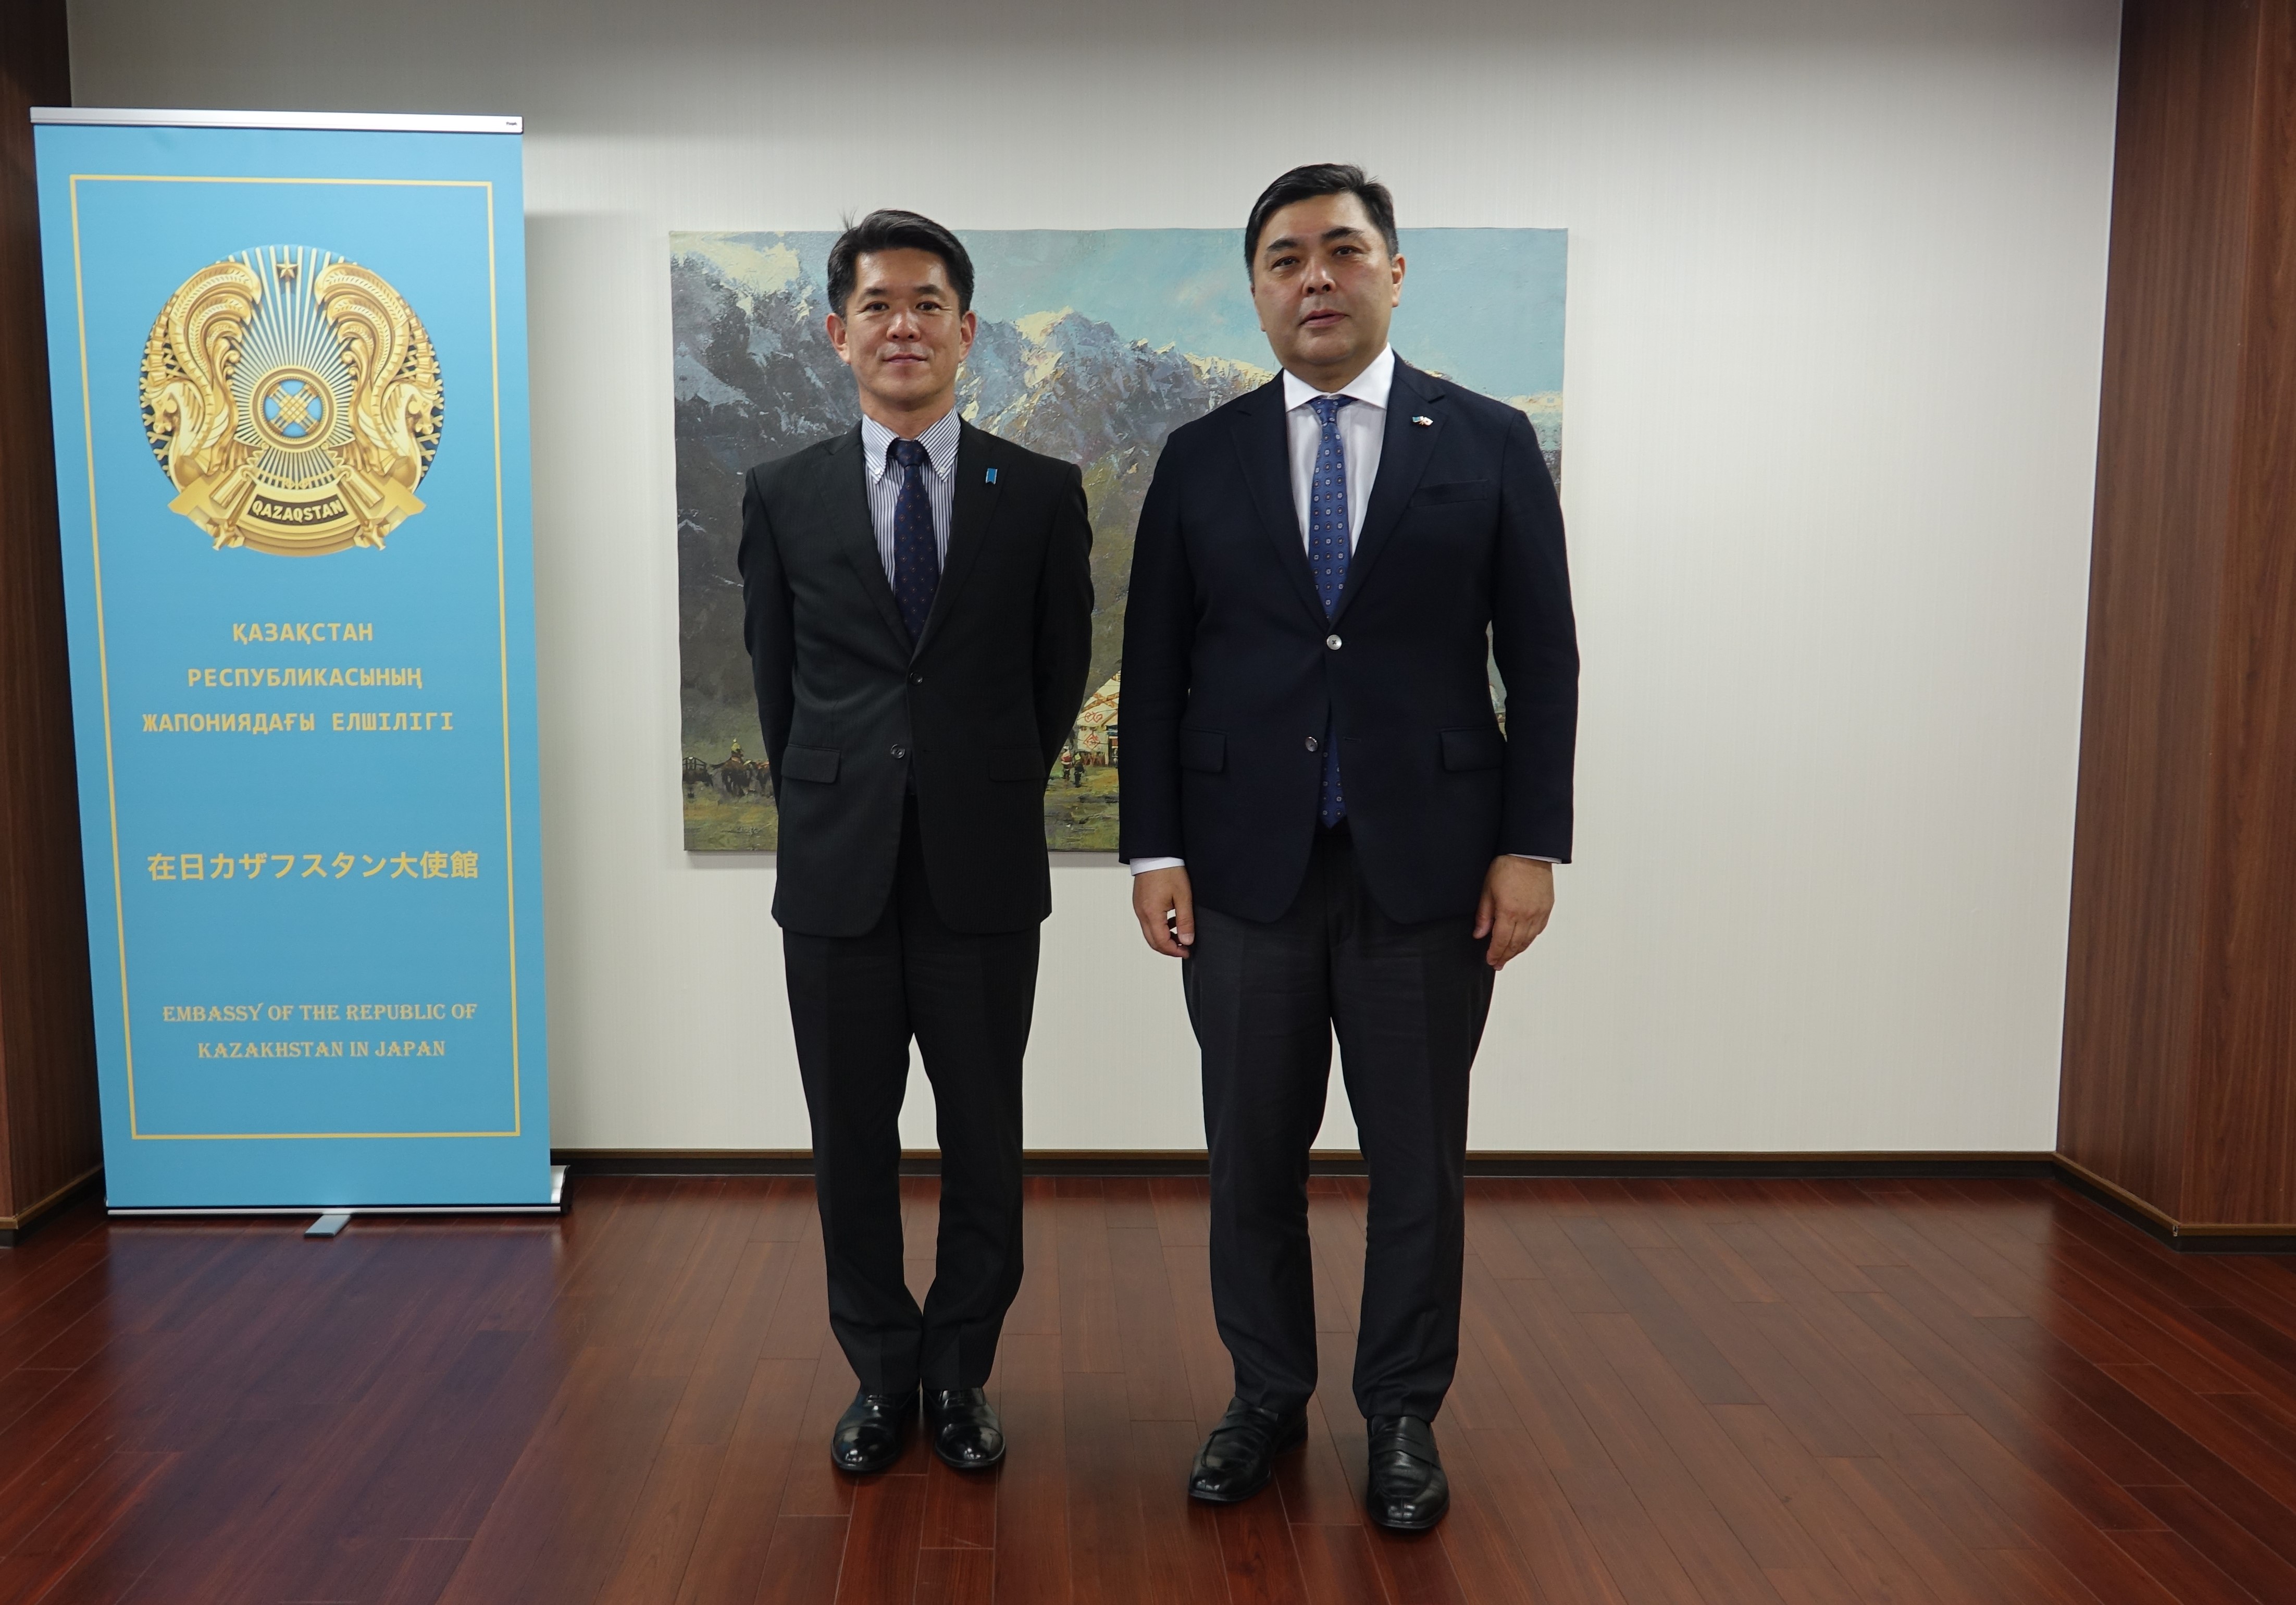 サ－ブル・エシムべコフ大使と日本外務省総合外交政策審議官の遠藤和也大使は、国際機関等における両国の取り組みについて意見交換を行いました。